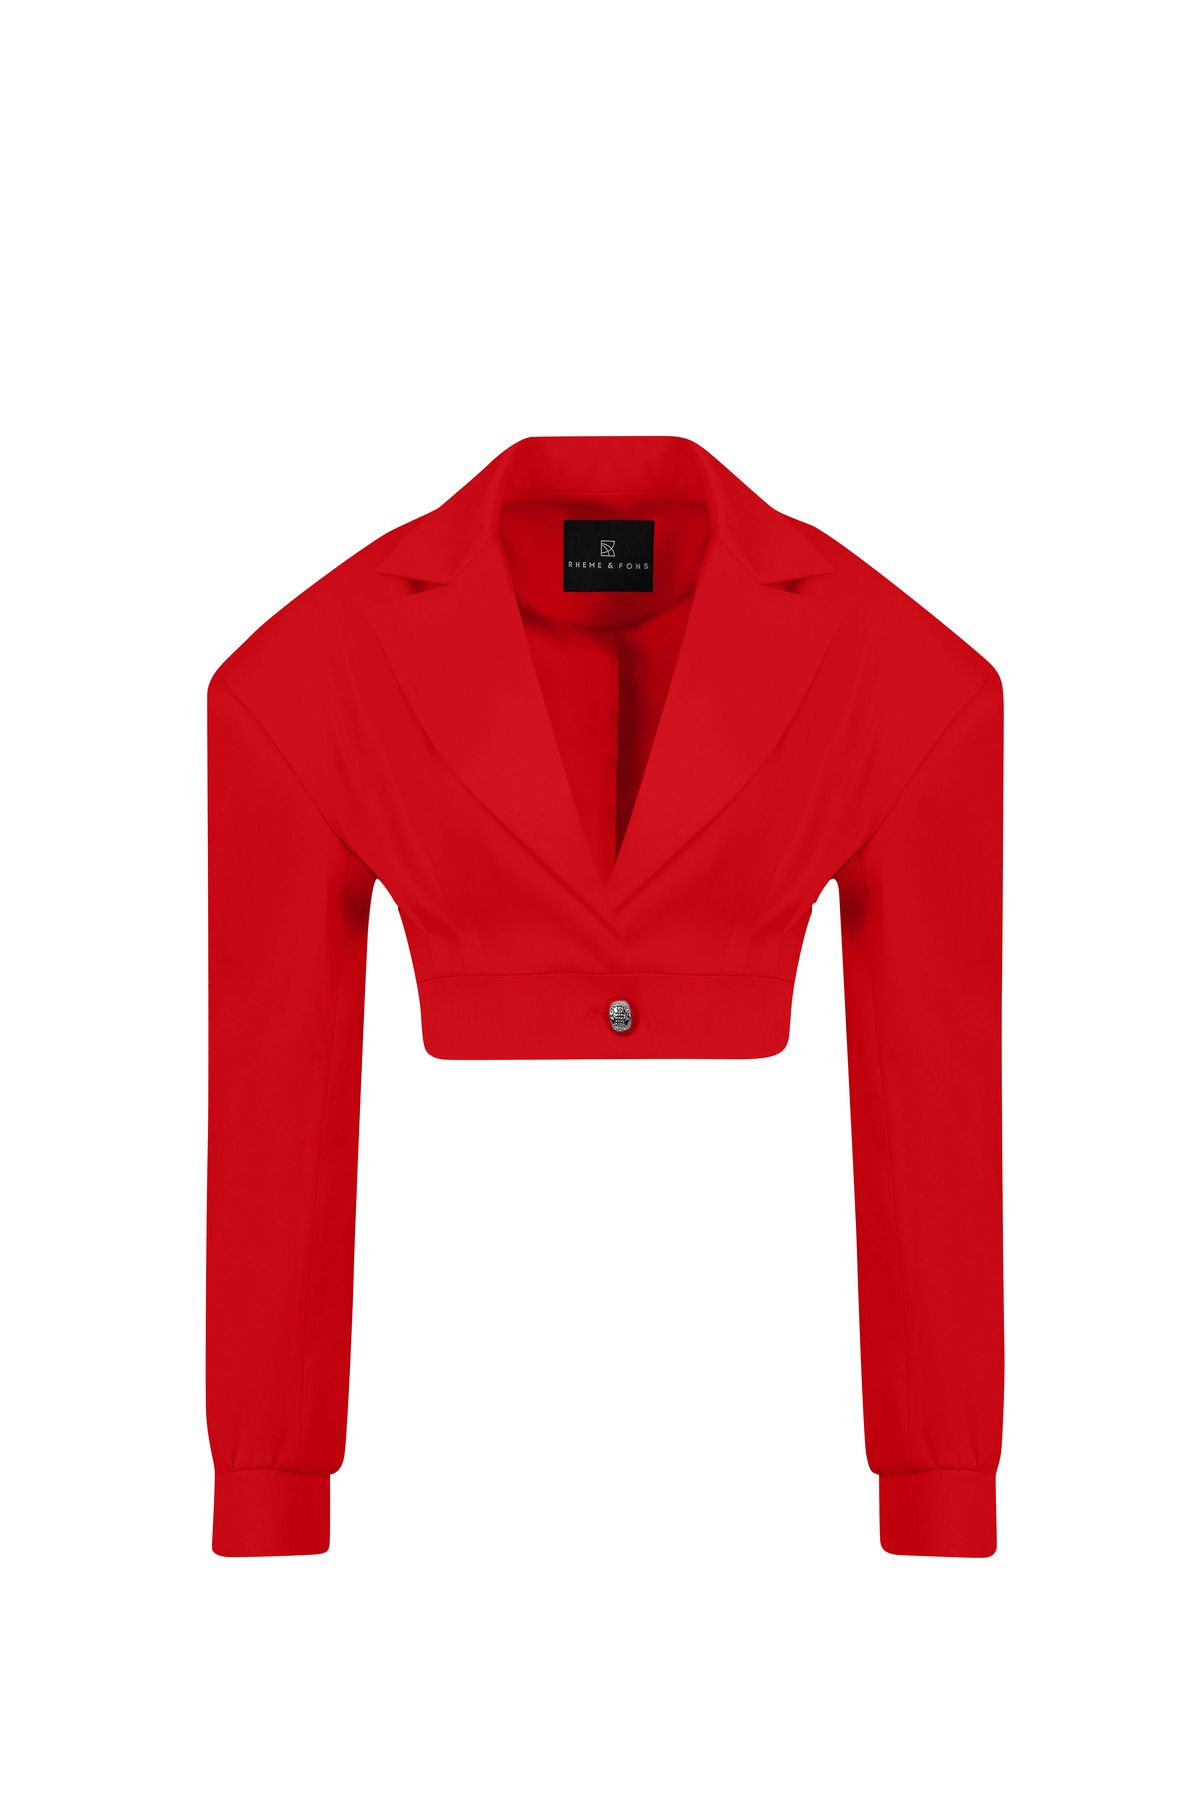 Rheme And Fons Özel Tasarım Couture El Işçiliği Düğme Detay Kırmızı Kadın Blazer Ceket